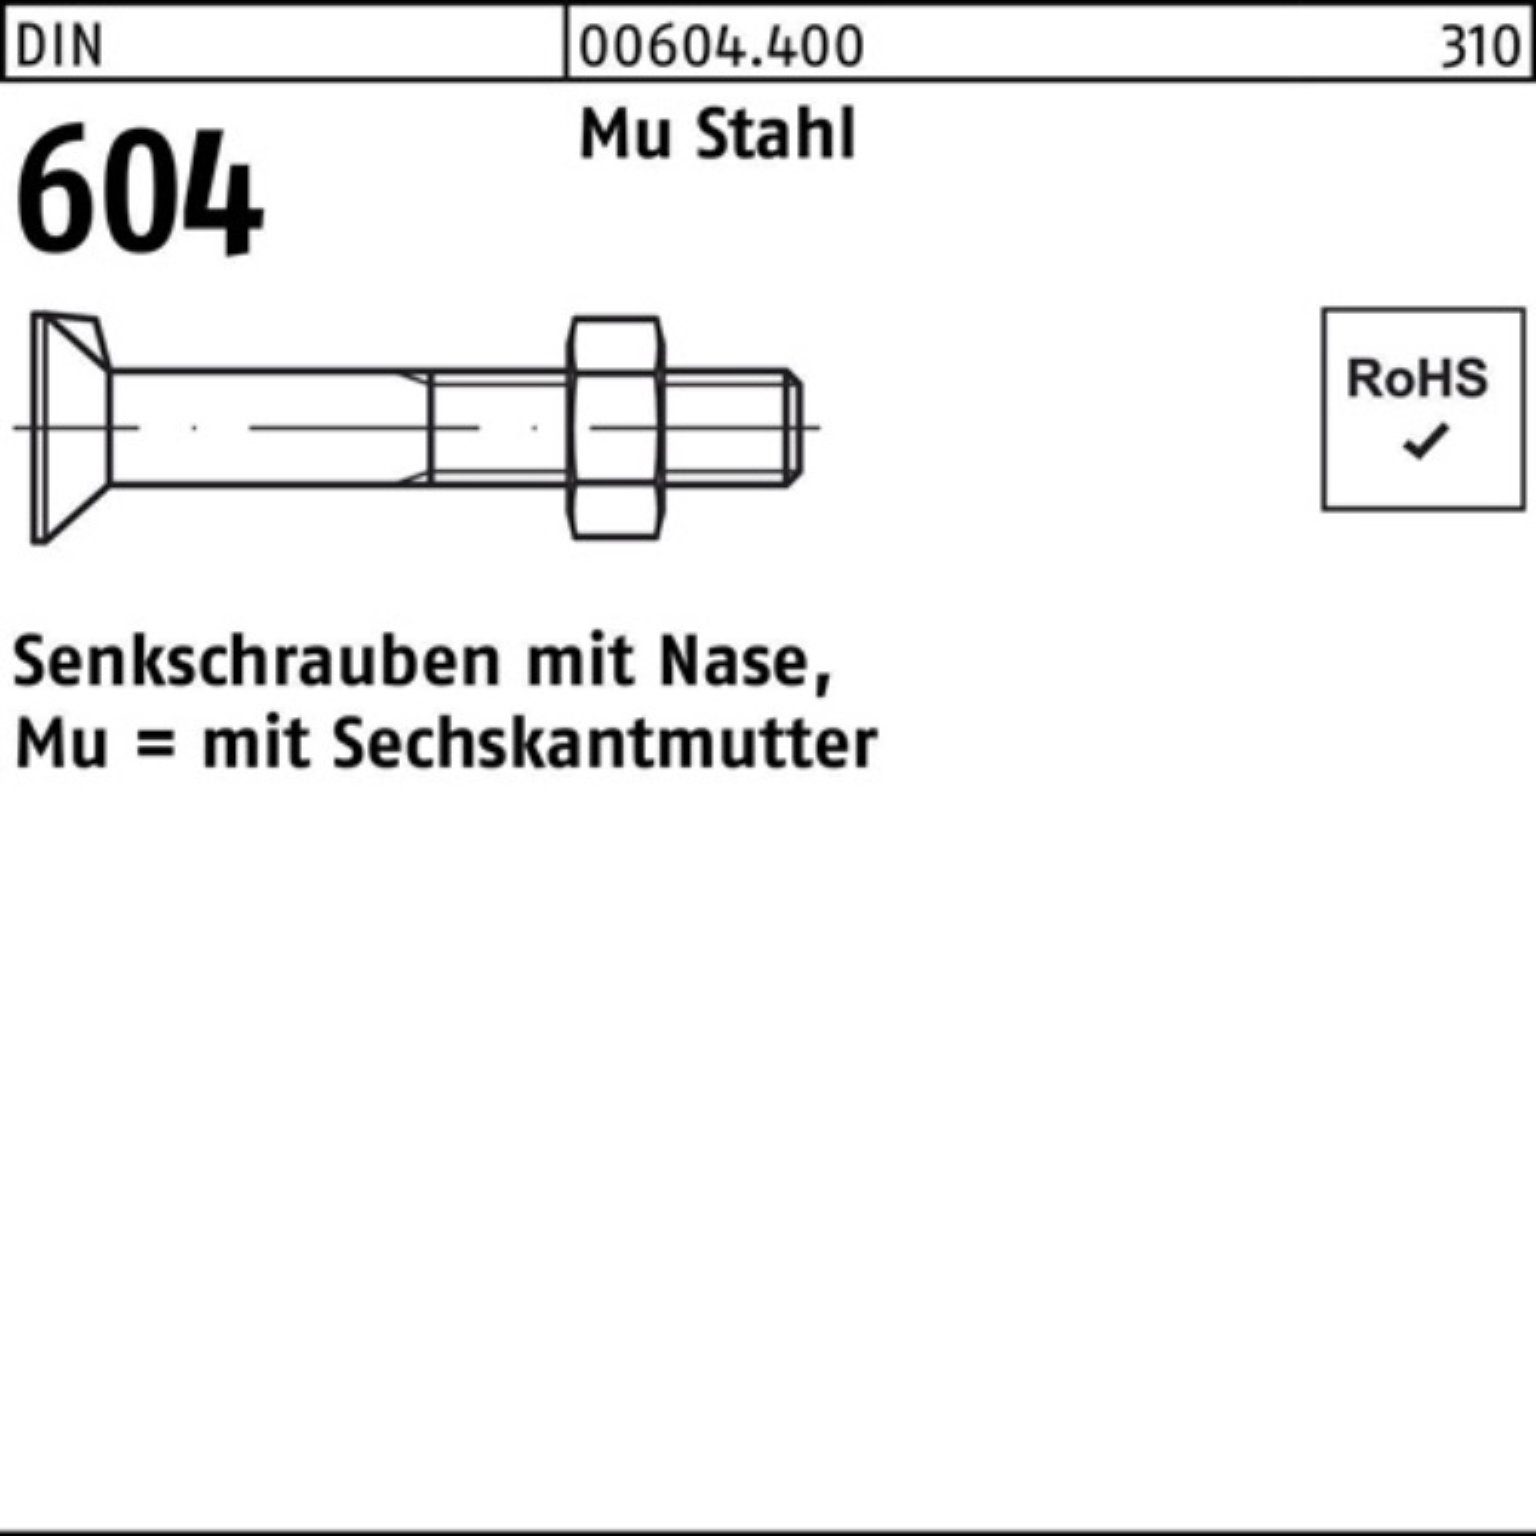 25 20 604 4.6 Nase/6-ktmutter Senkschraube M8x 200er DIN Mu Stahl Reyher Pack Senkschraube